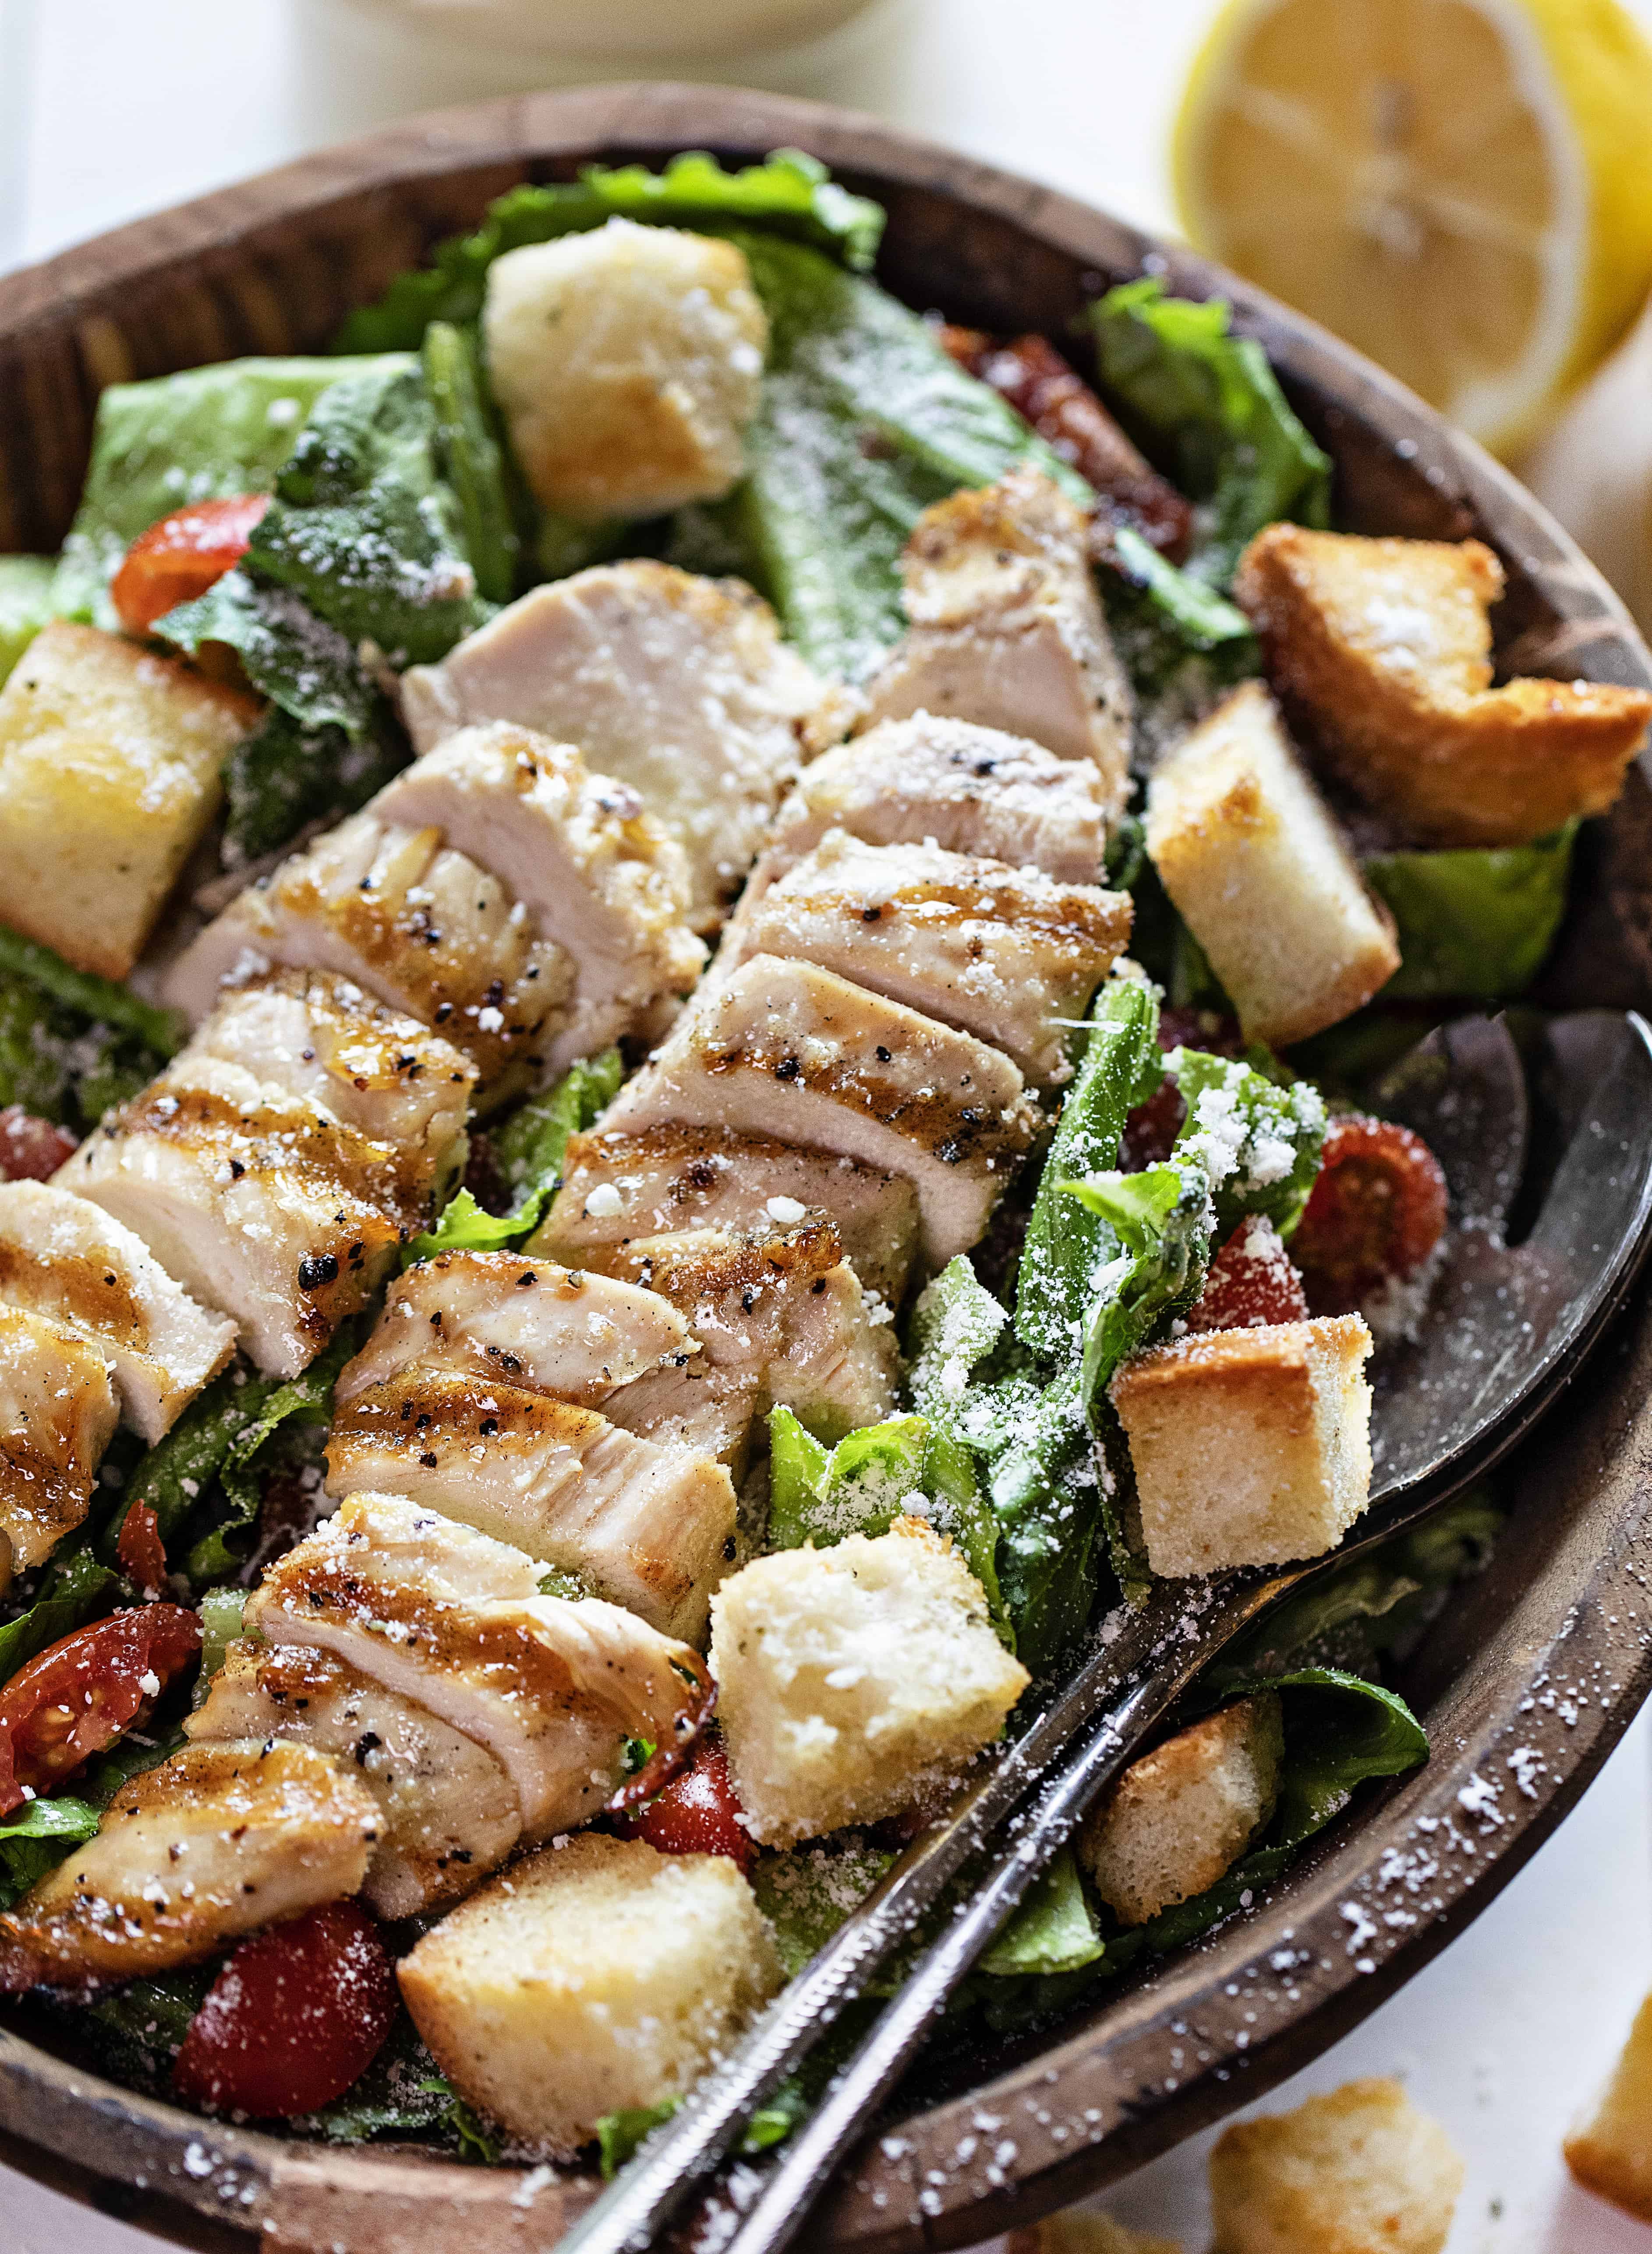 Chicken Caesar Salad Recipe